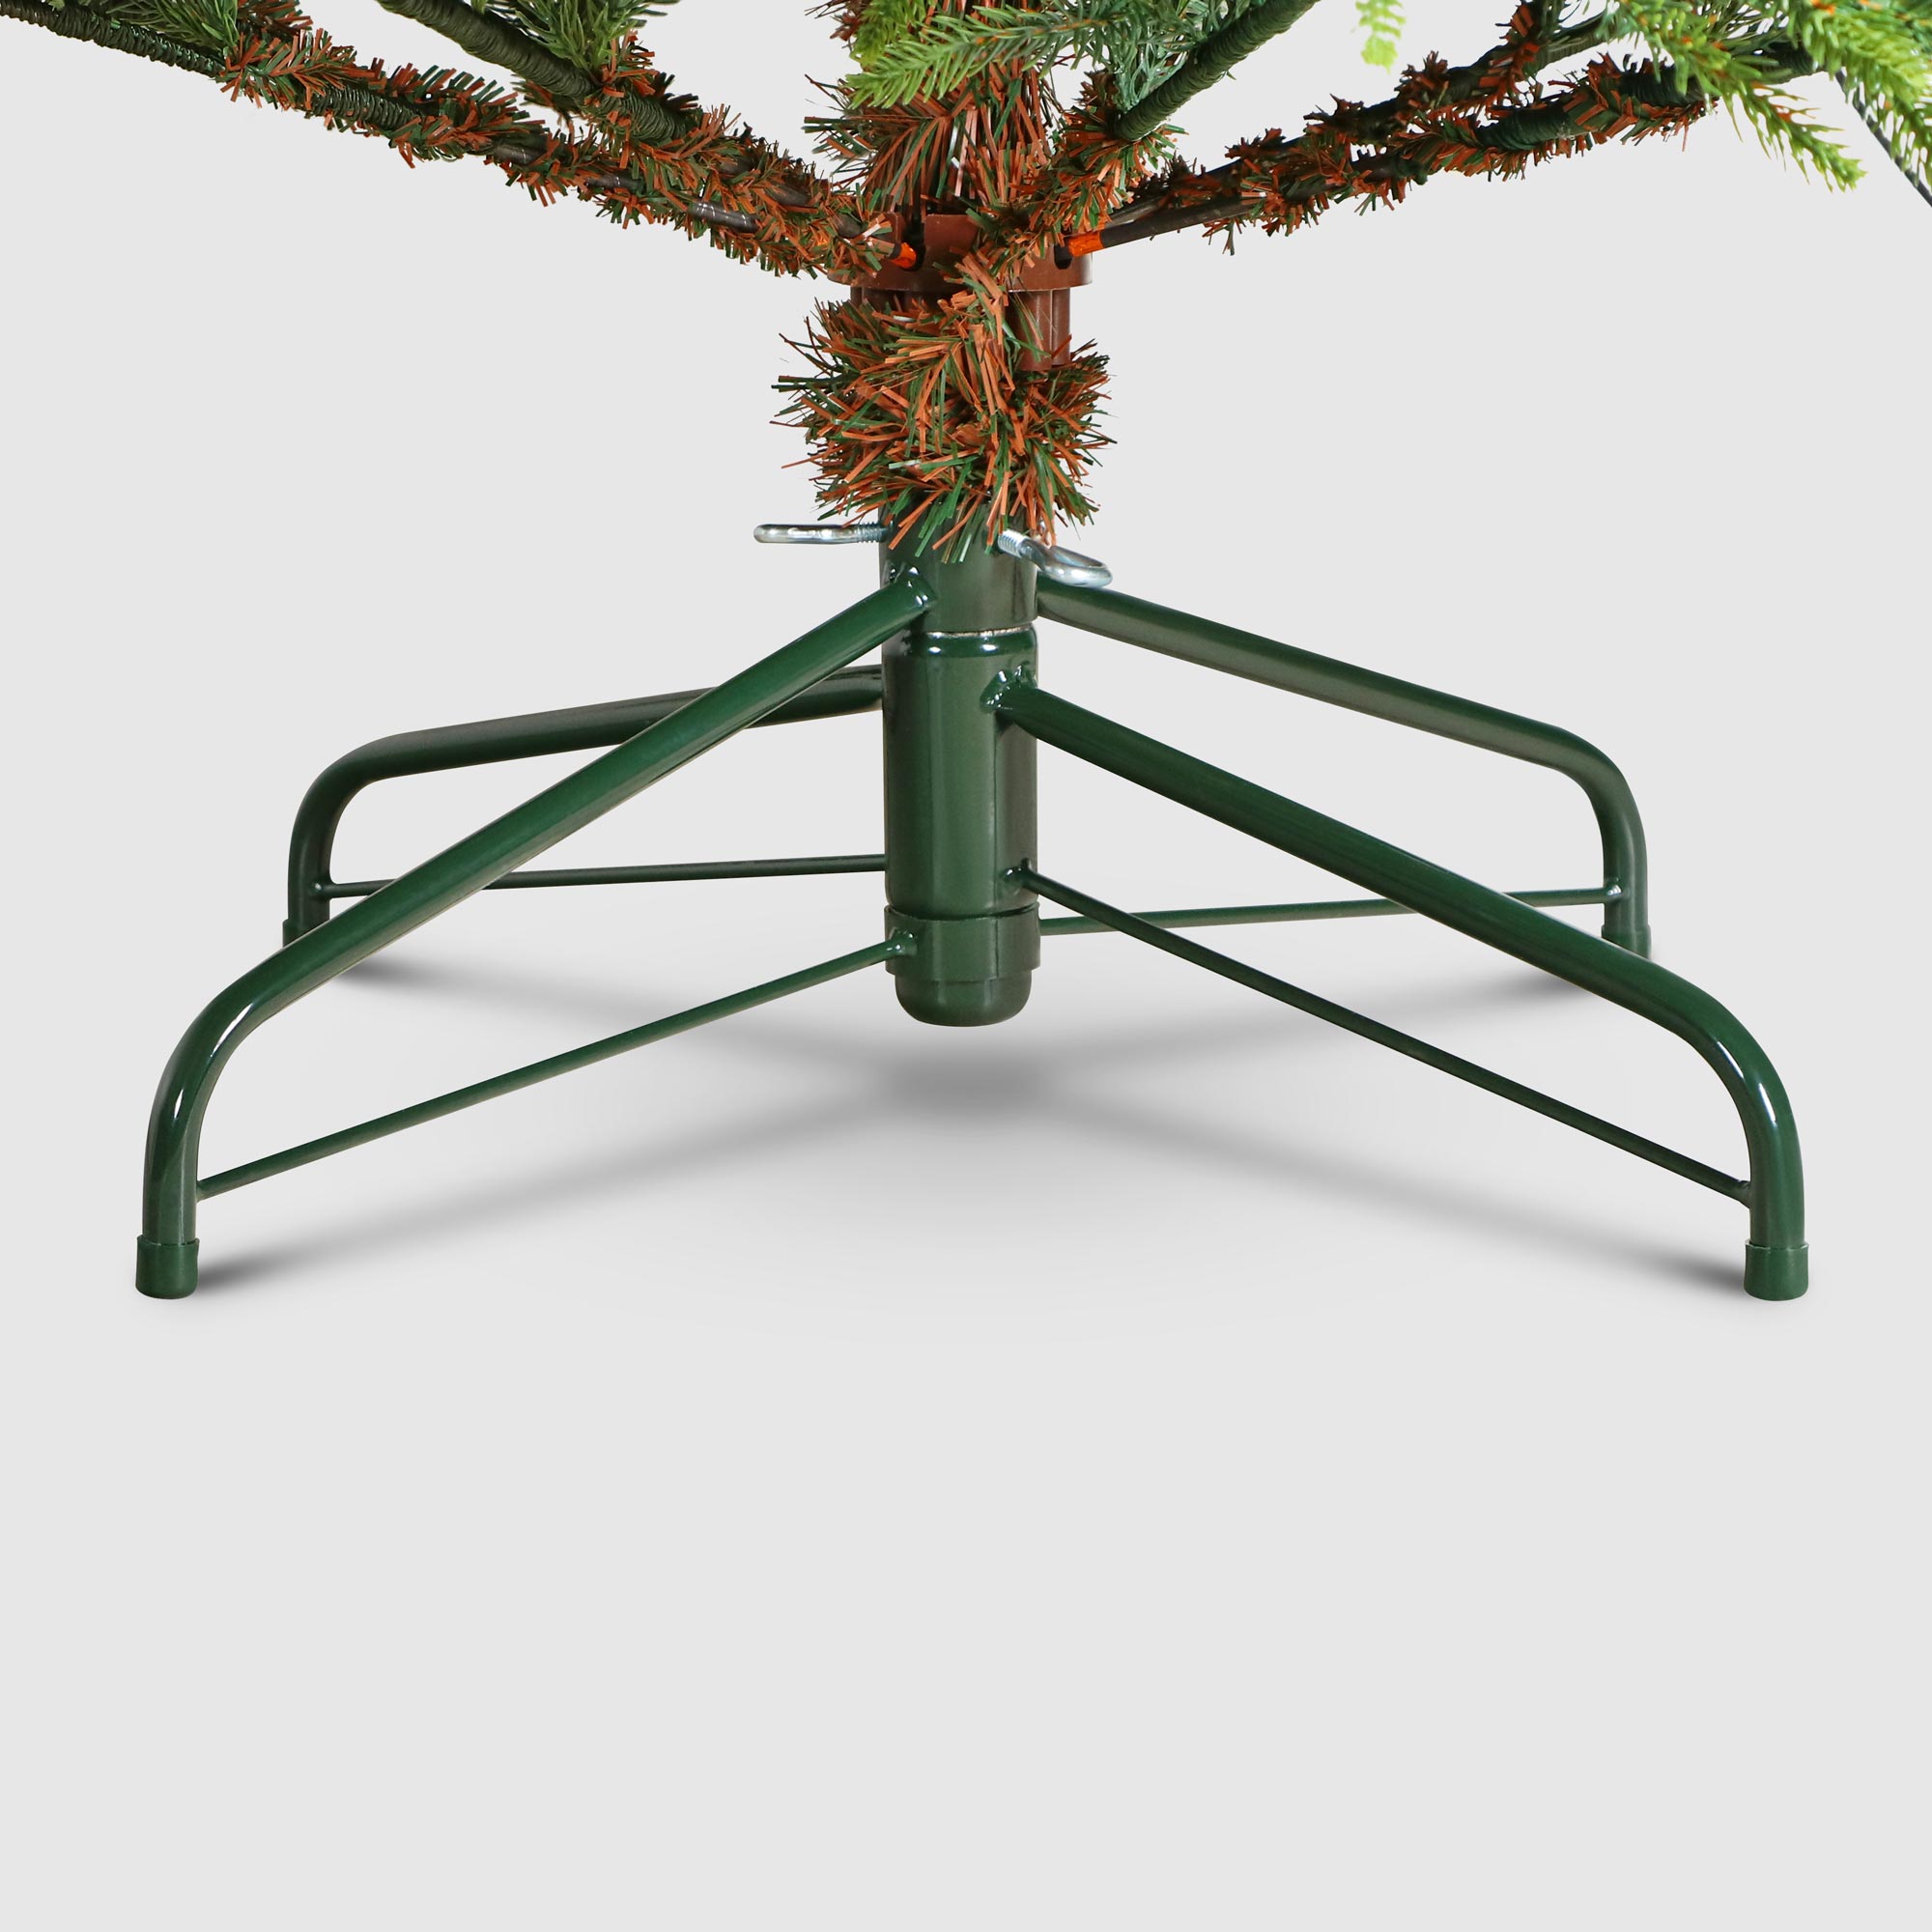 Ель новогодняя Triumph Tree Harrison exclusive 215 см, цвет зеленый - фото 5